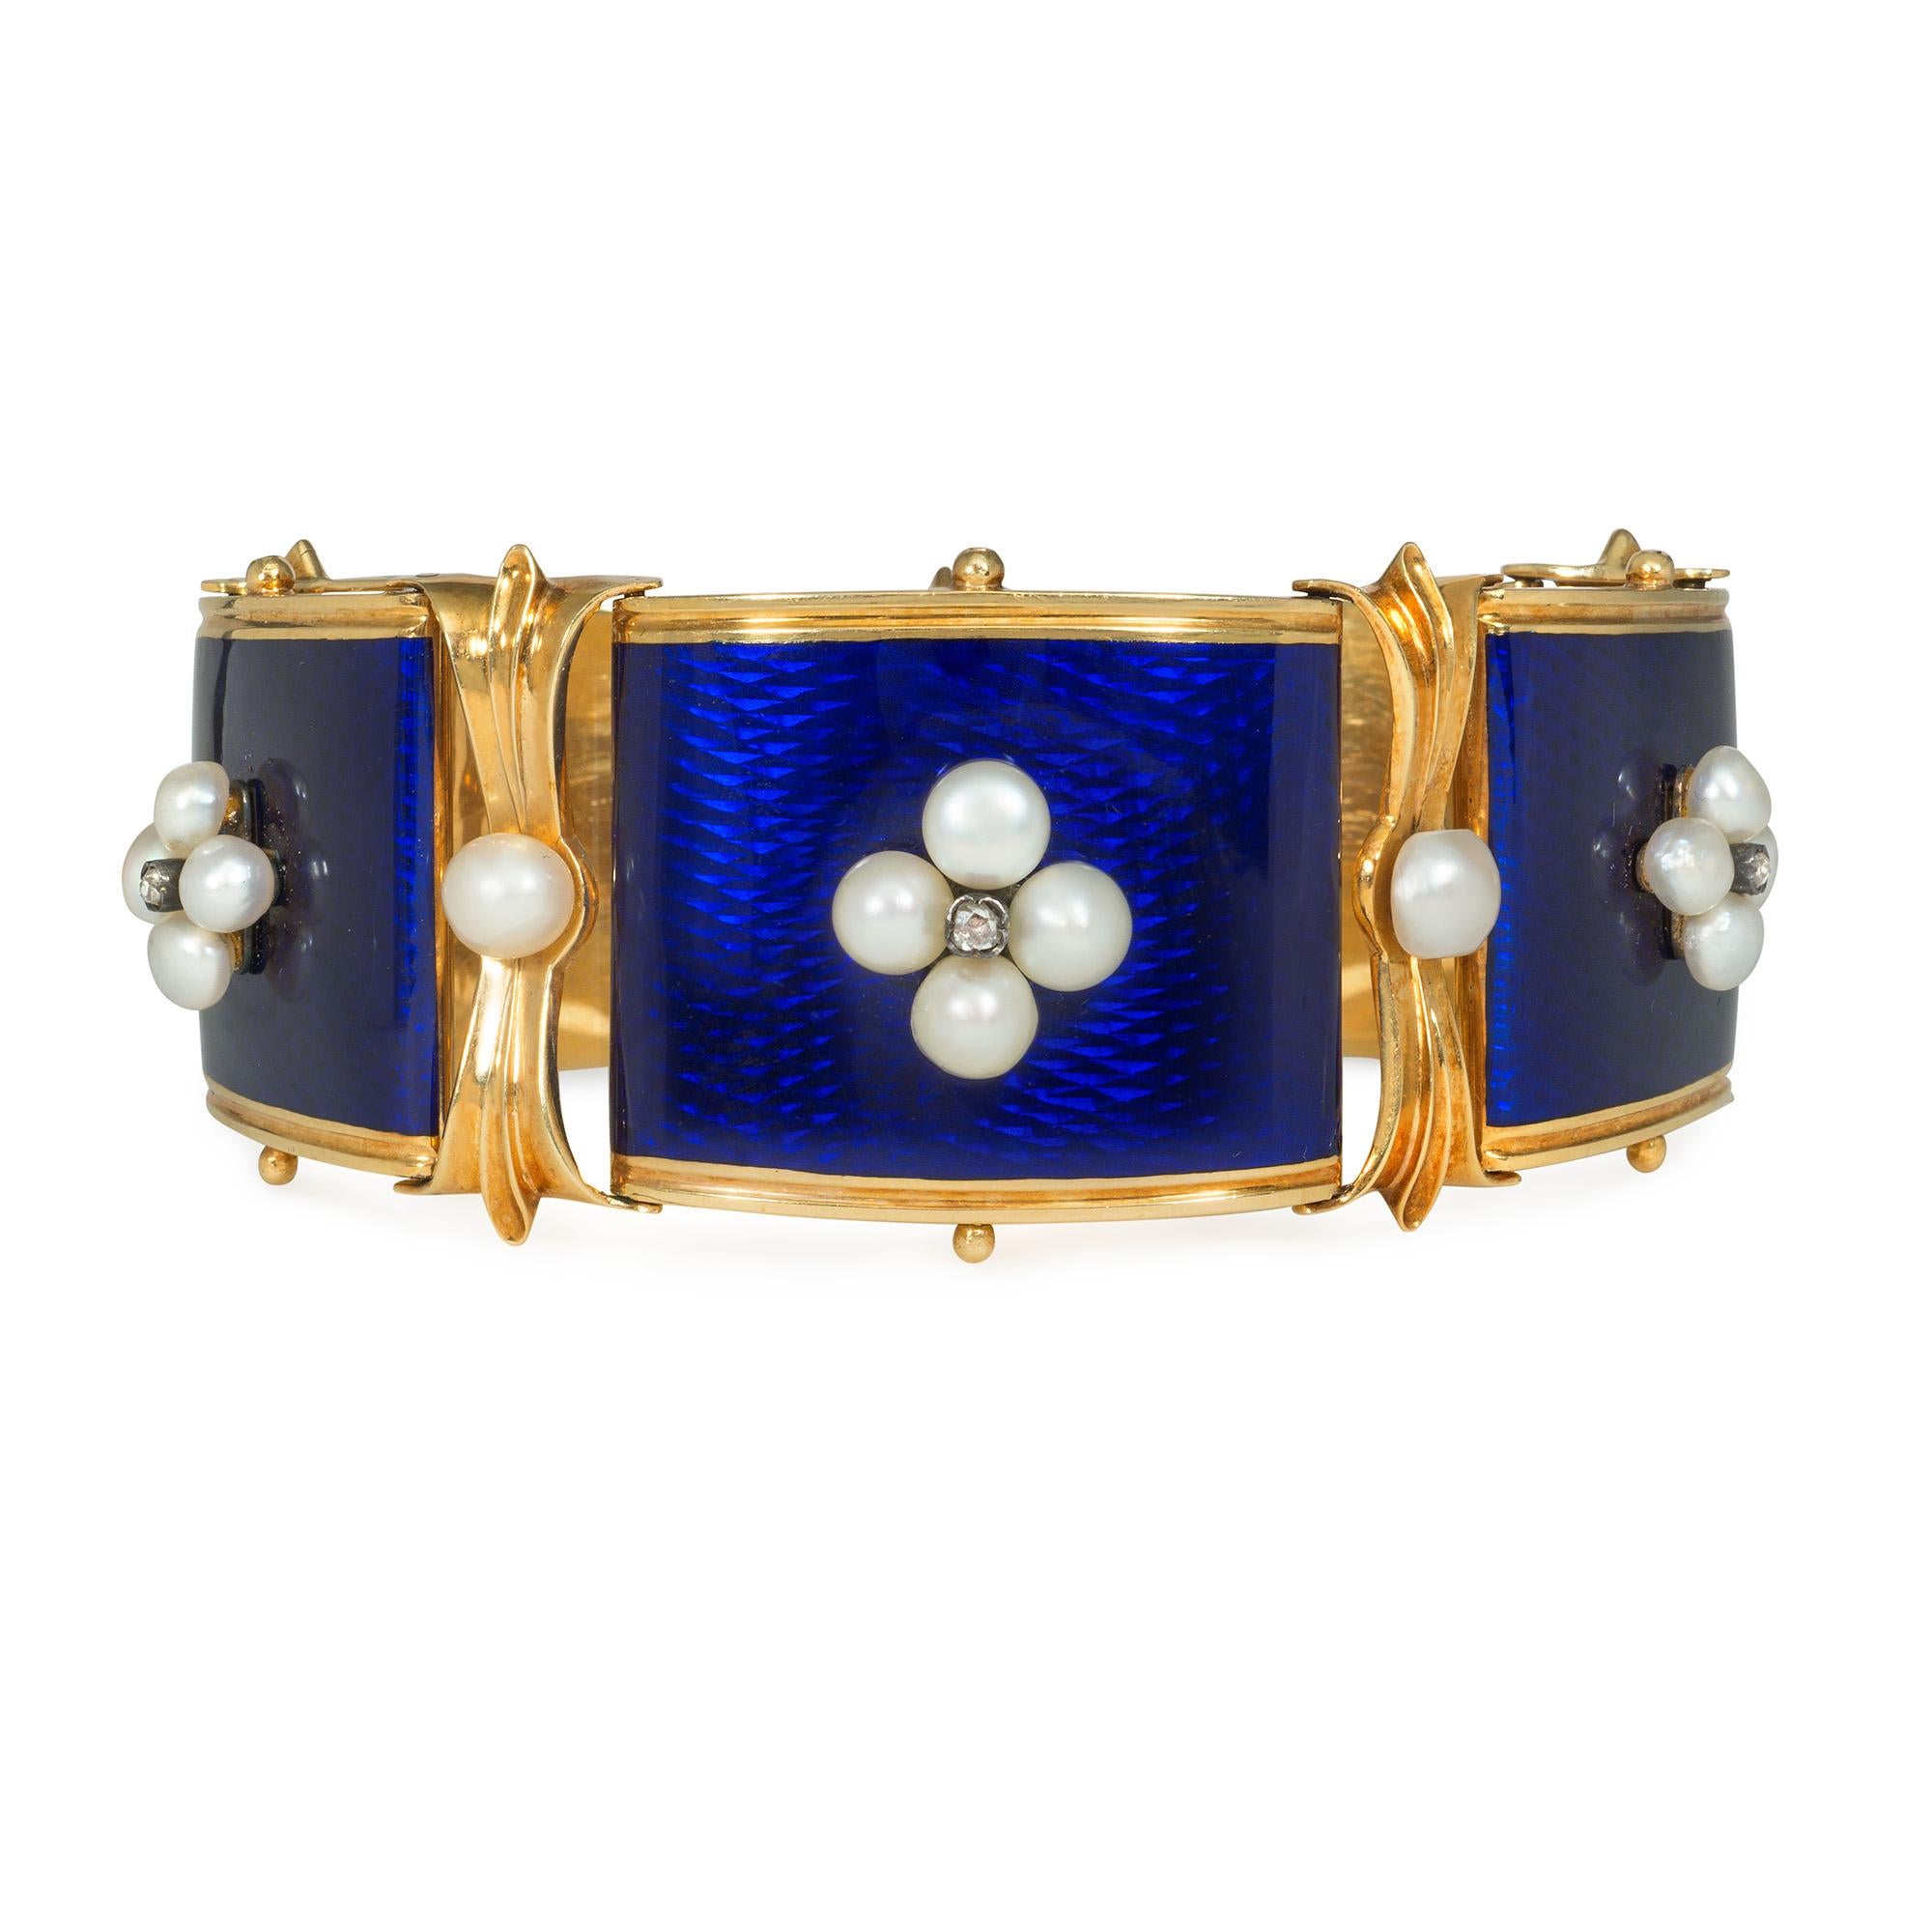 Un ancien bracelet victorien en or, émail, perles et diamants composé de cinq plaques effilées en émail bleu serties de perles quadrilobées et d'éléments en diamants roses, avec un motif de feuillage et des entretoises en perles, en 18 carats avec